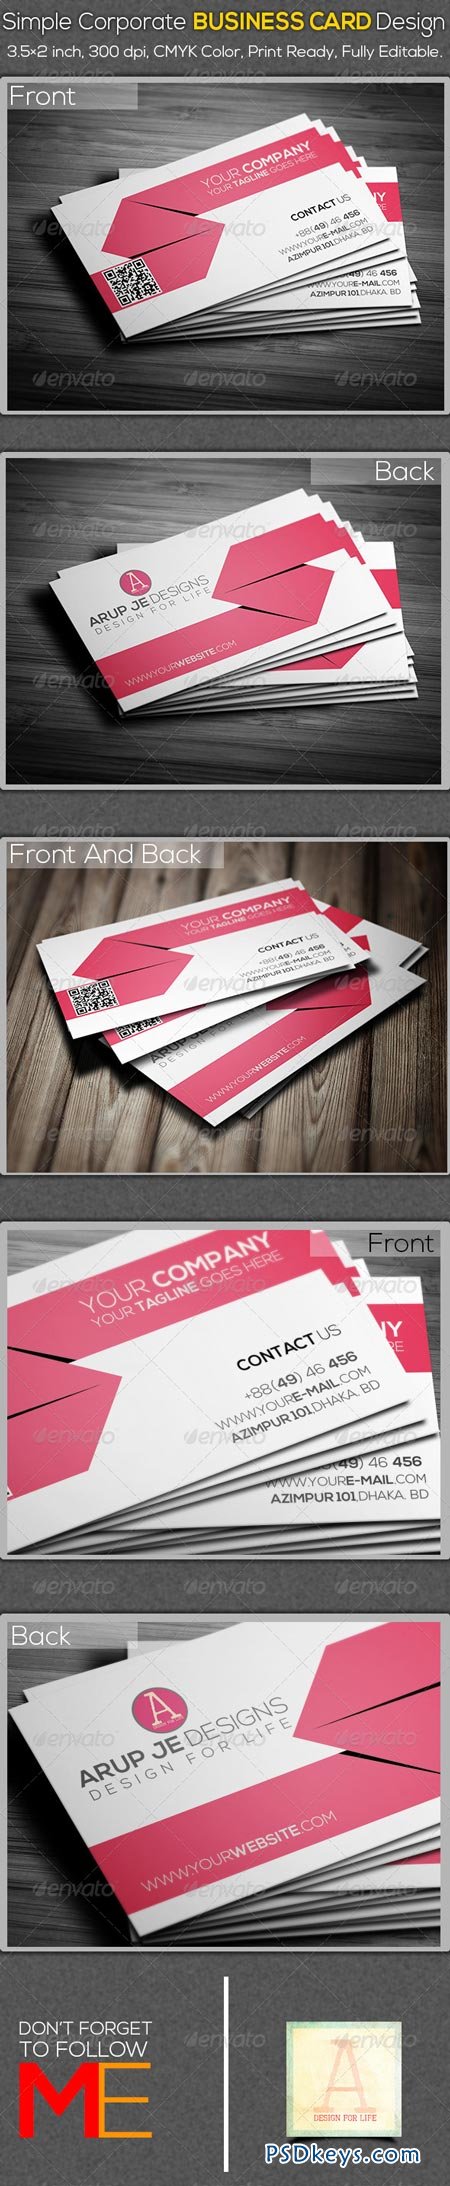 Simple Corporate Business Card Design 6925191